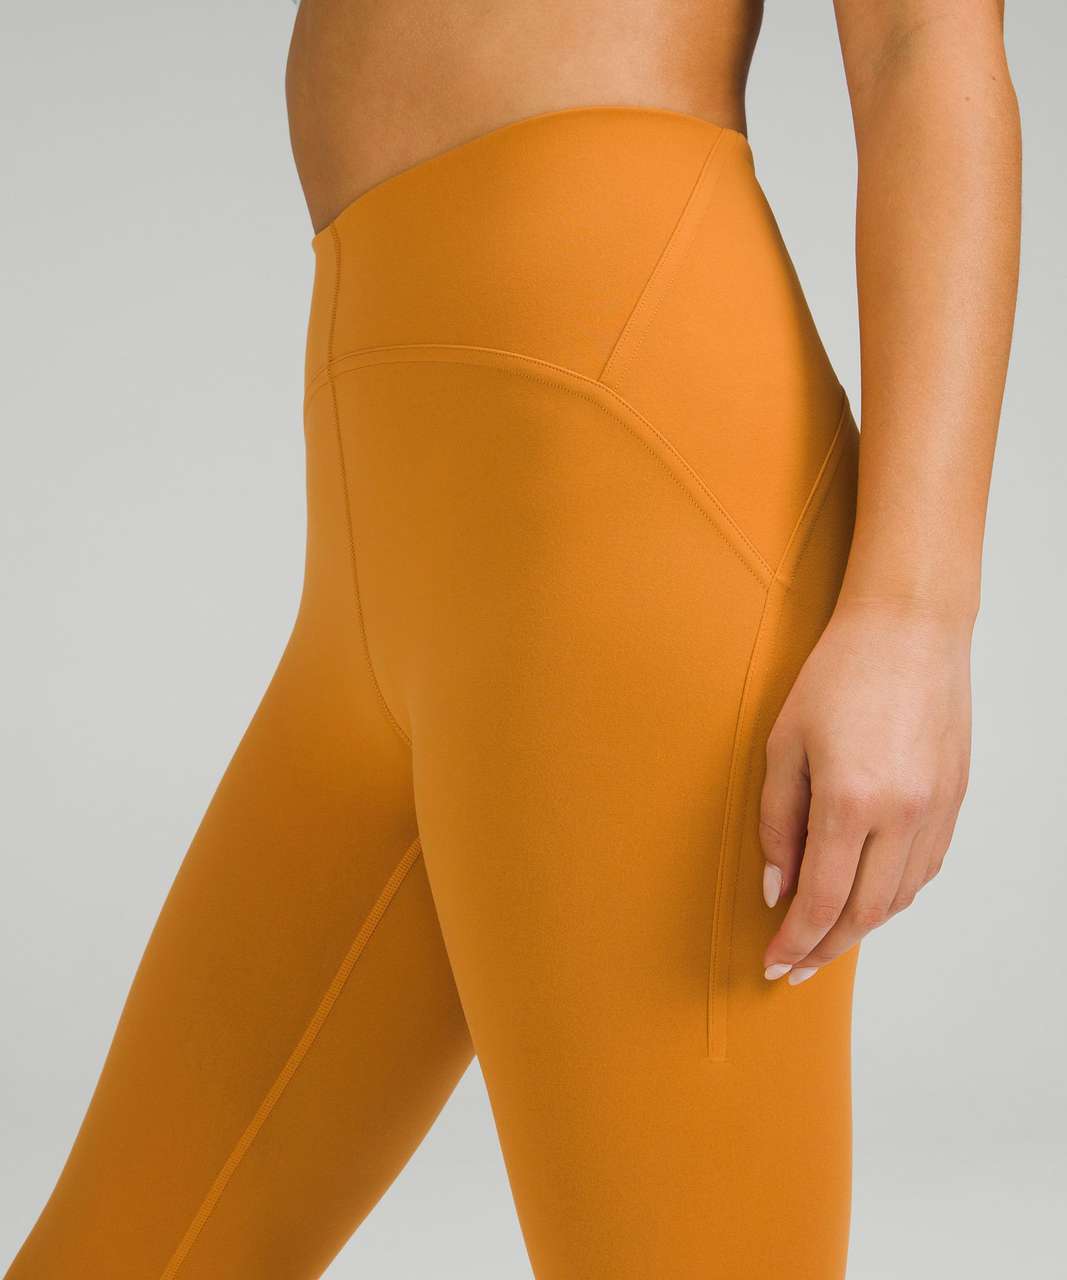 Lululemon Instill leggings in color Terra Orange!